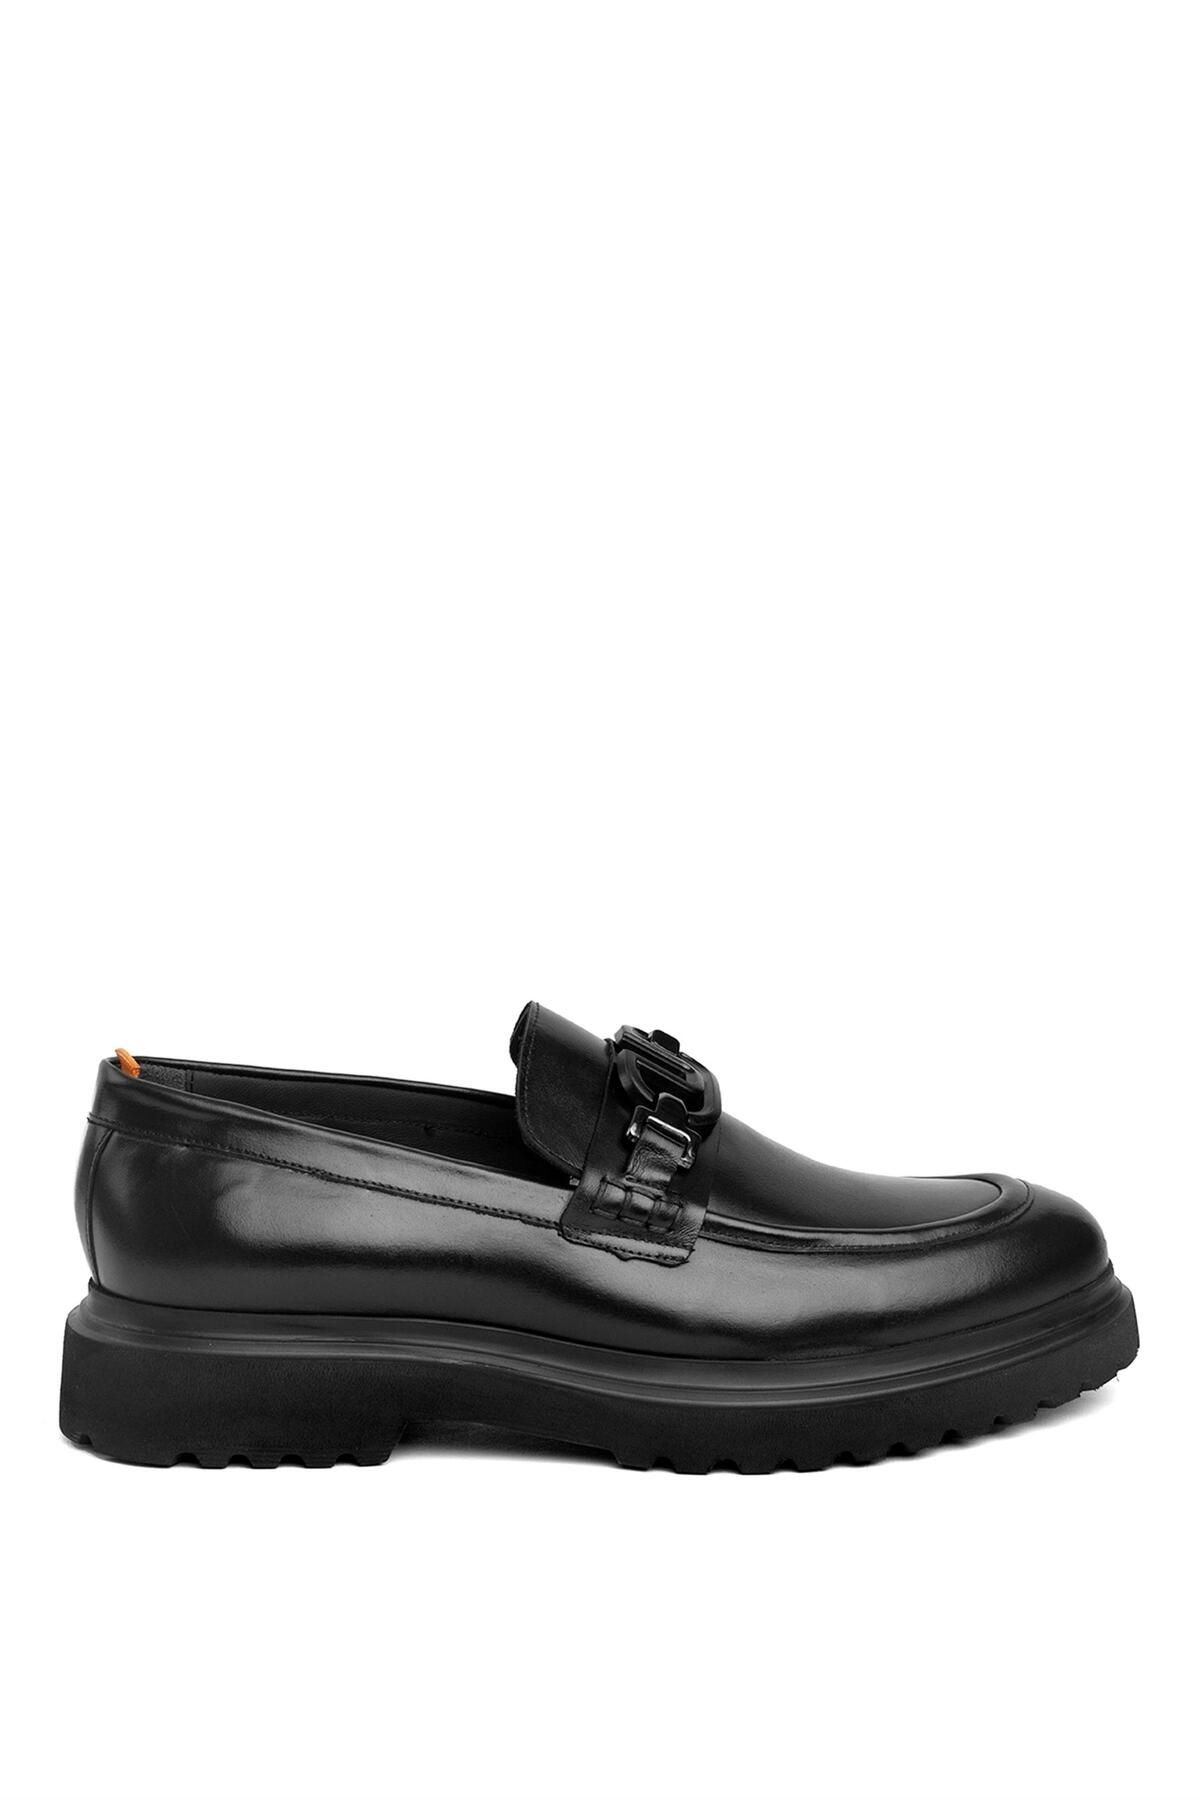 MARCOMEN 19578 Erkek Hakiki Deri Loafer Ayakkabı Siyah